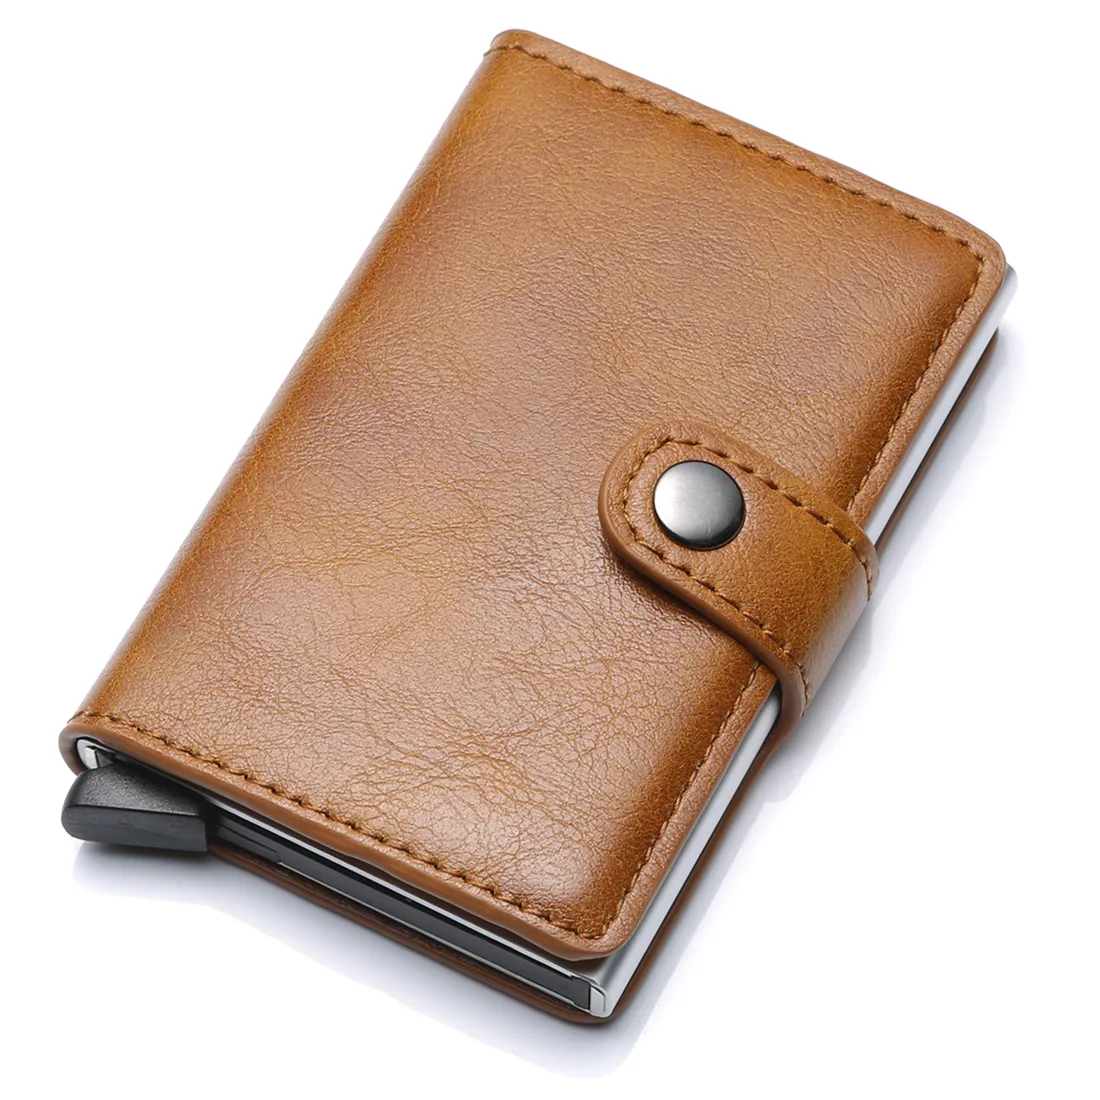 Carteira masculina pop-up de couro, carteira inteligente pequena feita em couro com suporte para cartões de crédito, minimalista, venda imperdível